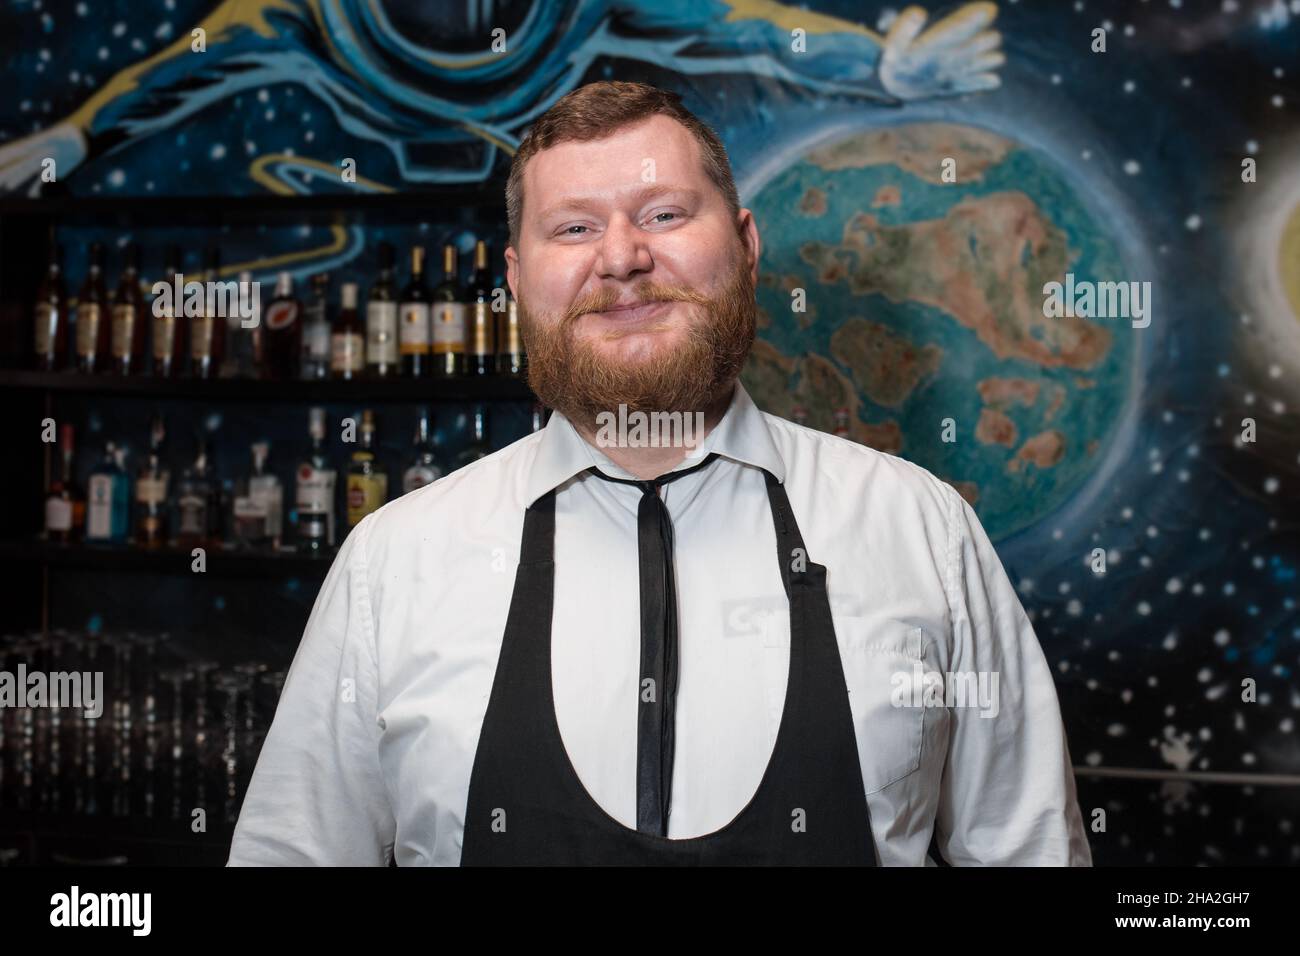 Bärtiger Erwachsener lustig positiv lächelnd kaukasisch aussehend professioneller Barkeeper Portrait im Nachtclub. Stockfoto